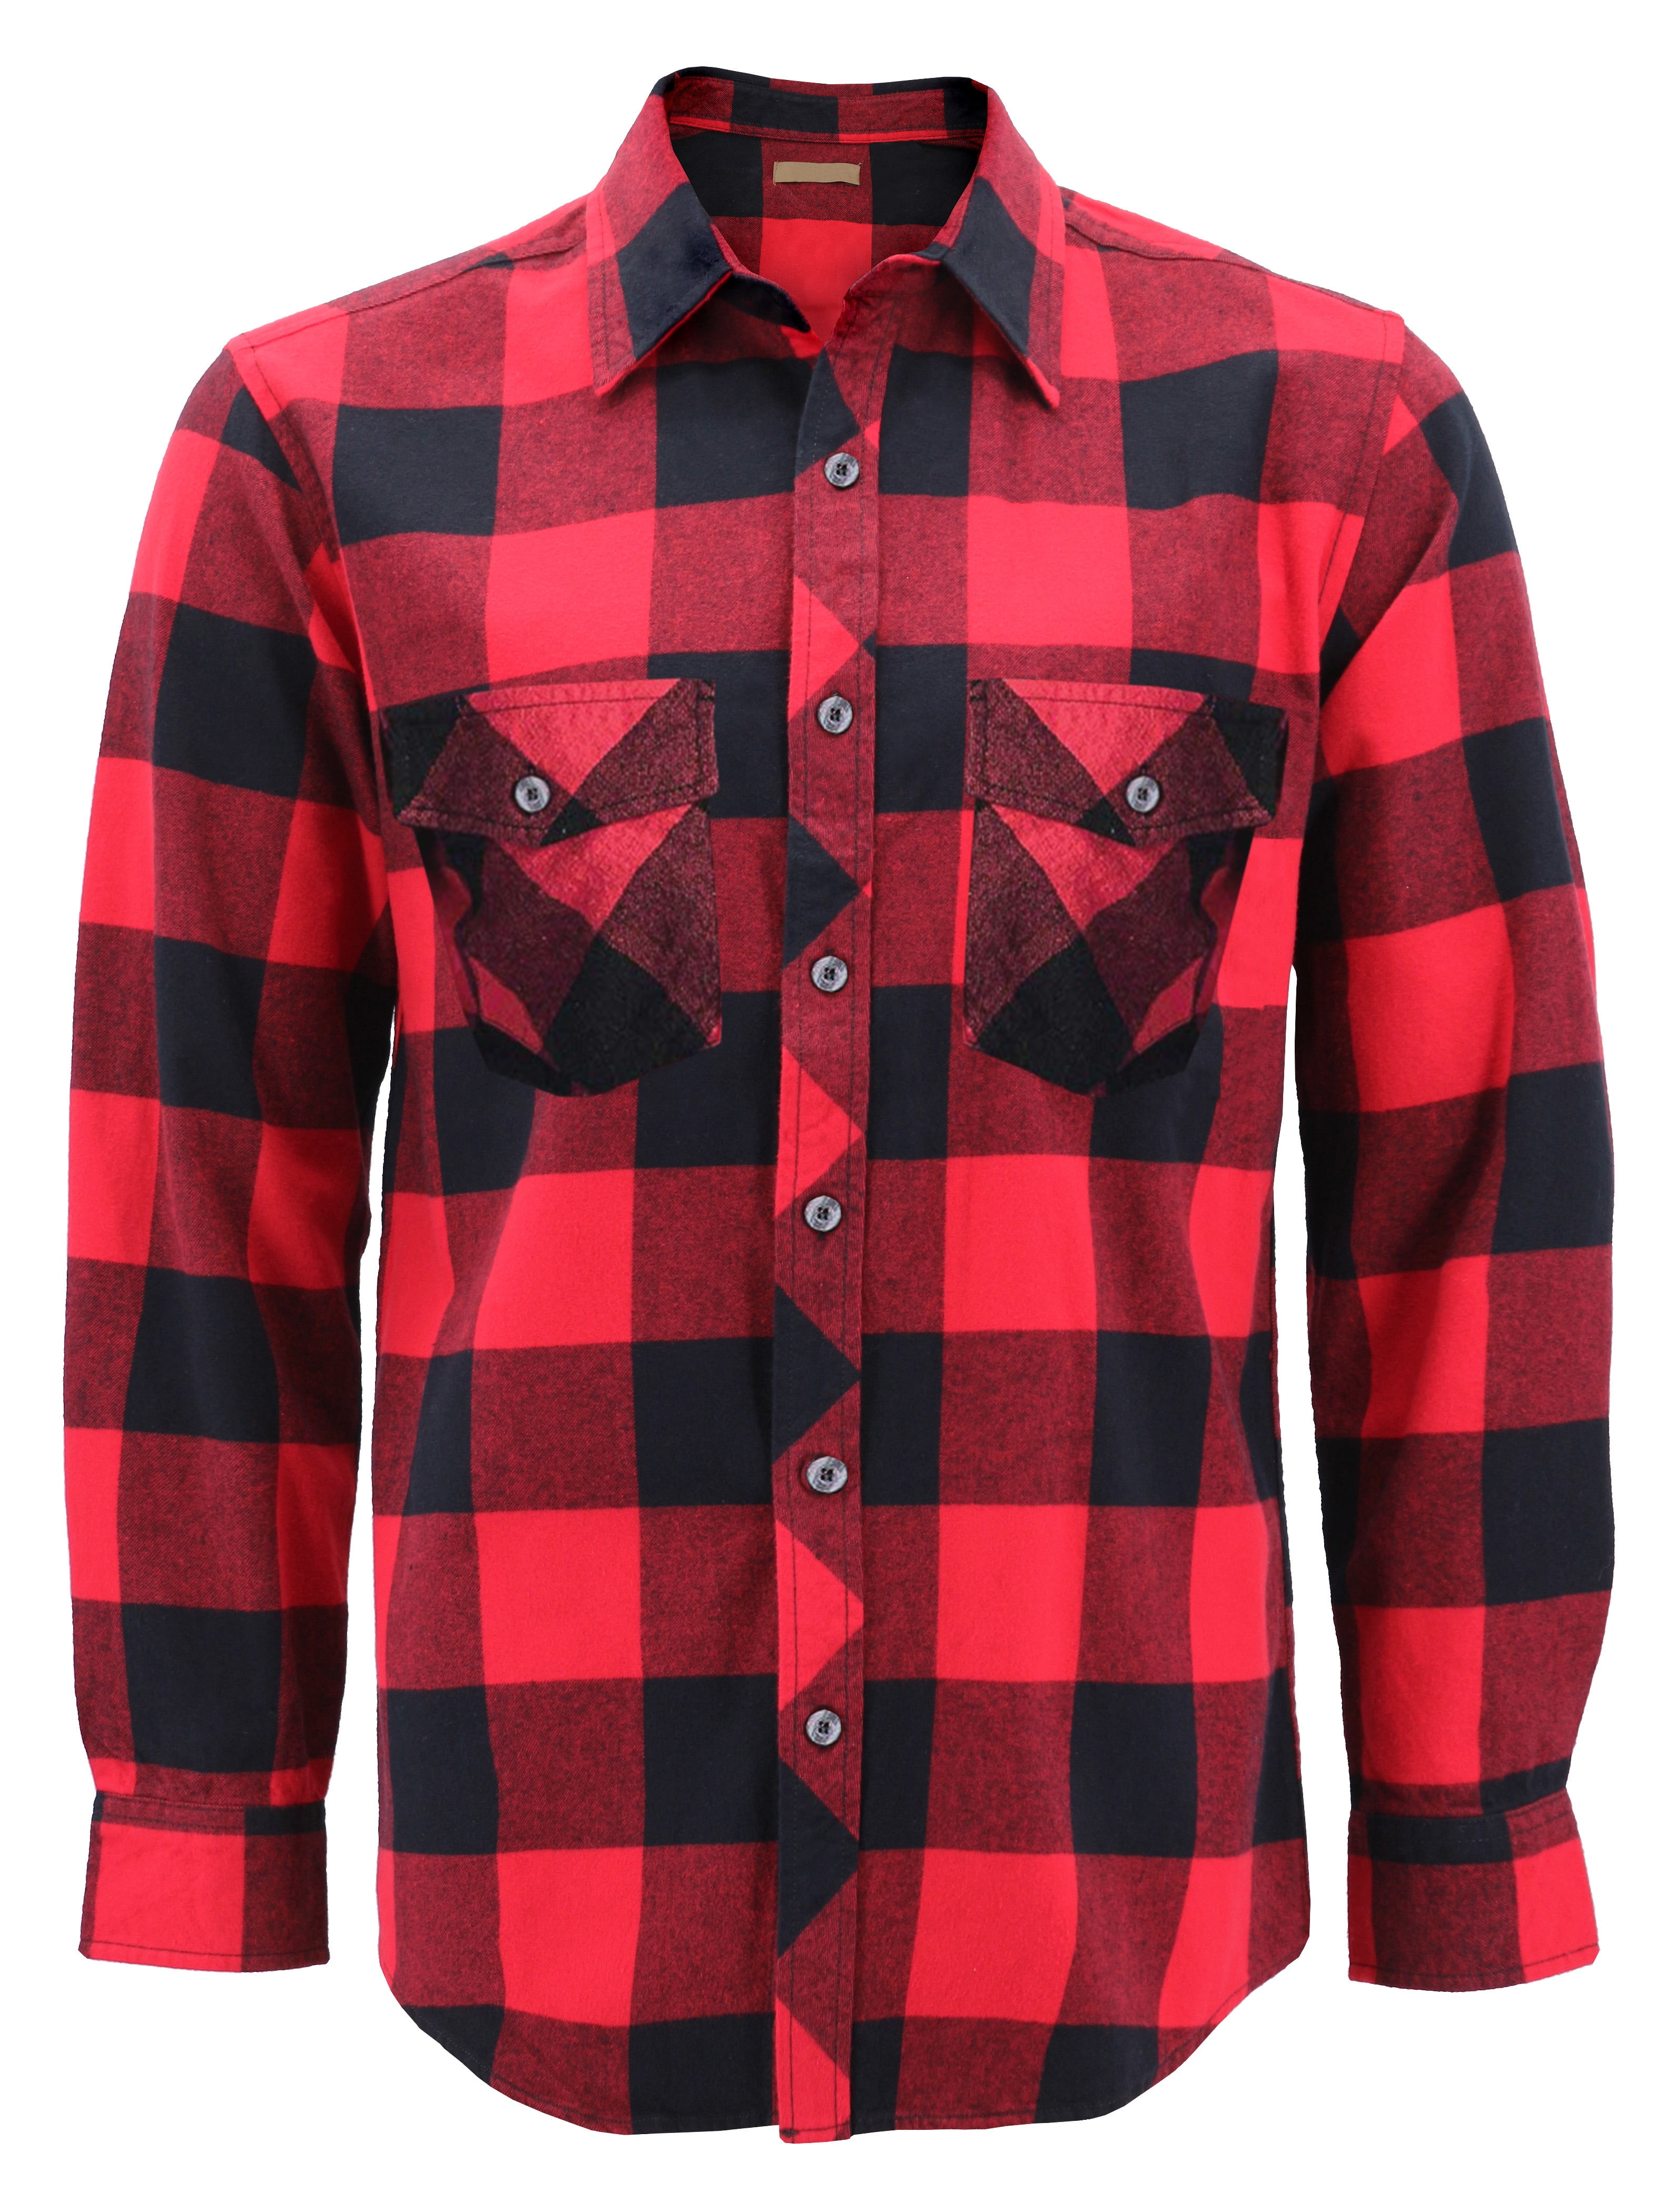 Men S Premium Cotton Button Up Long Sleeve Plaid Comfortable Flannel Shirt 3 Red Black S